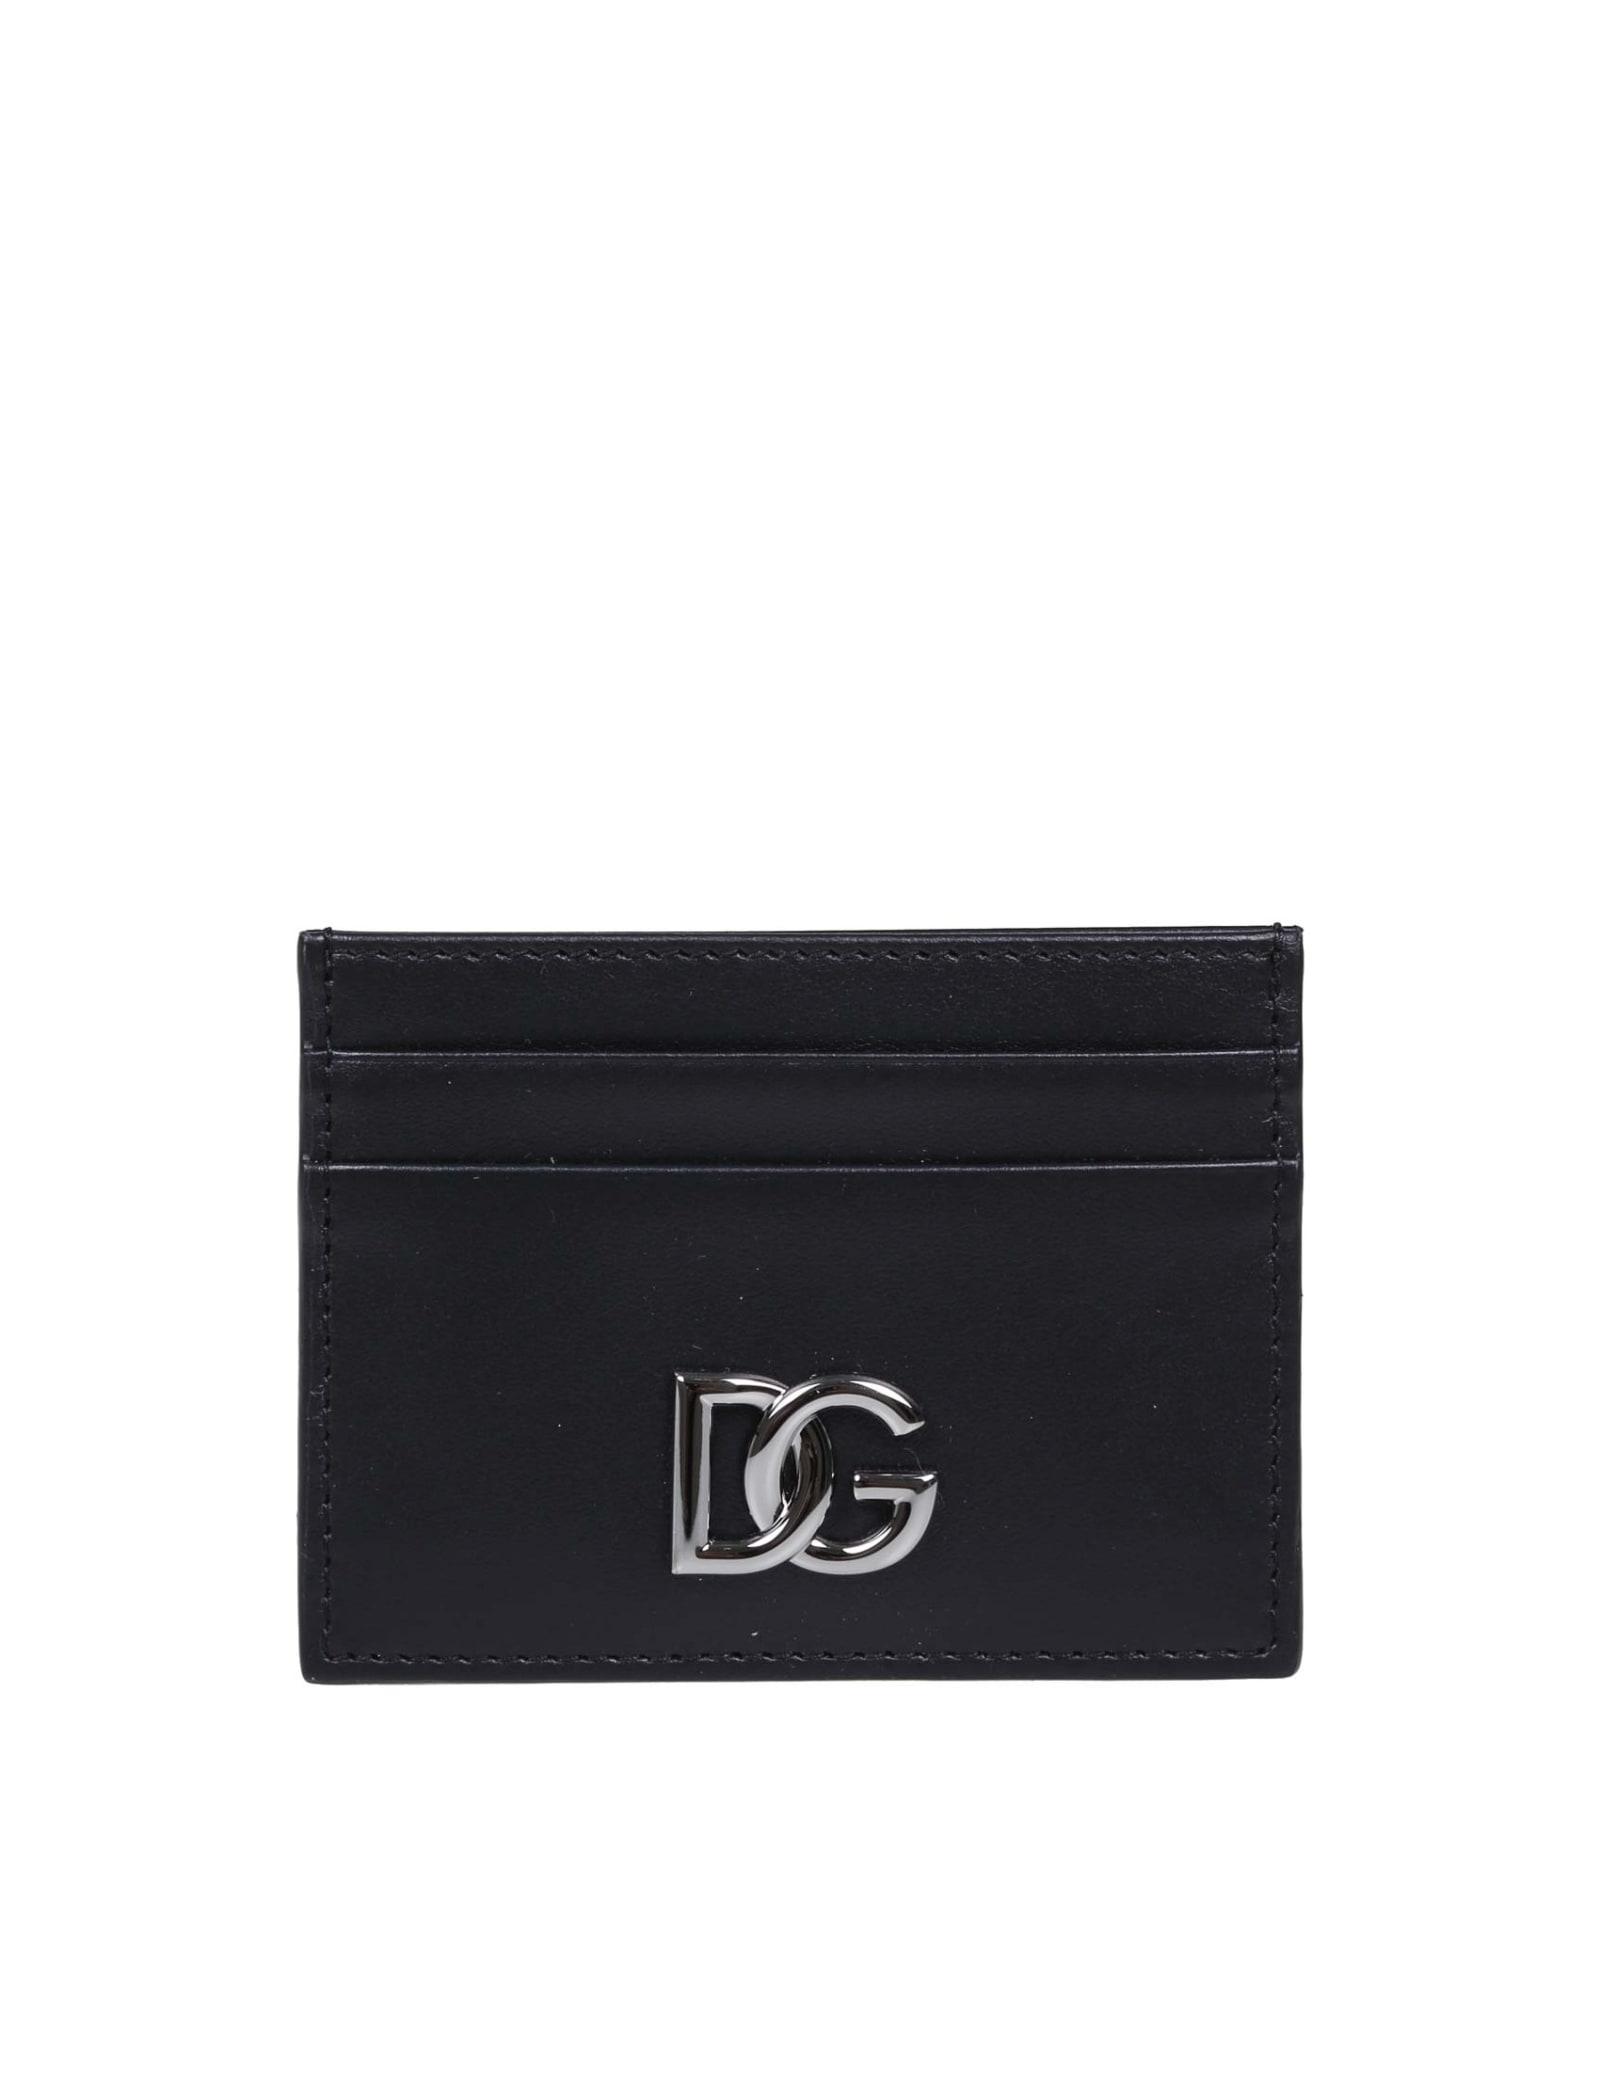 Dolce & Gabbana Credit Card Holder With Logo